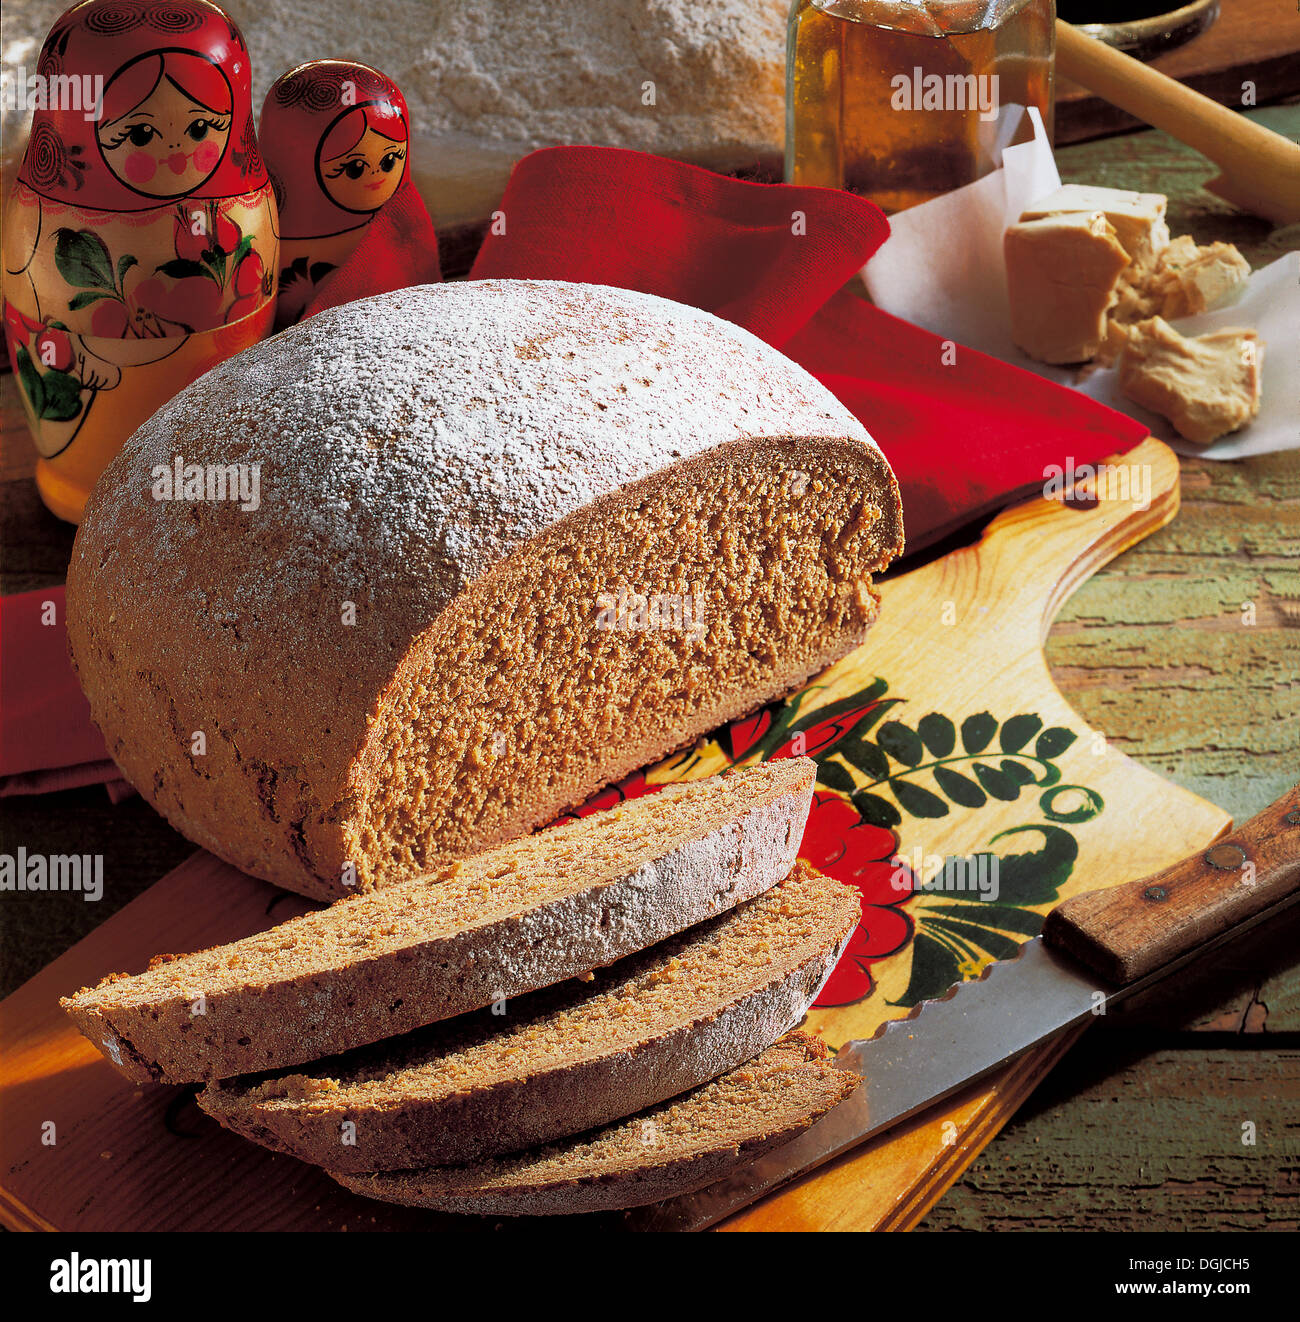 Dark rye farmer's bread, Russia. Stock Photo